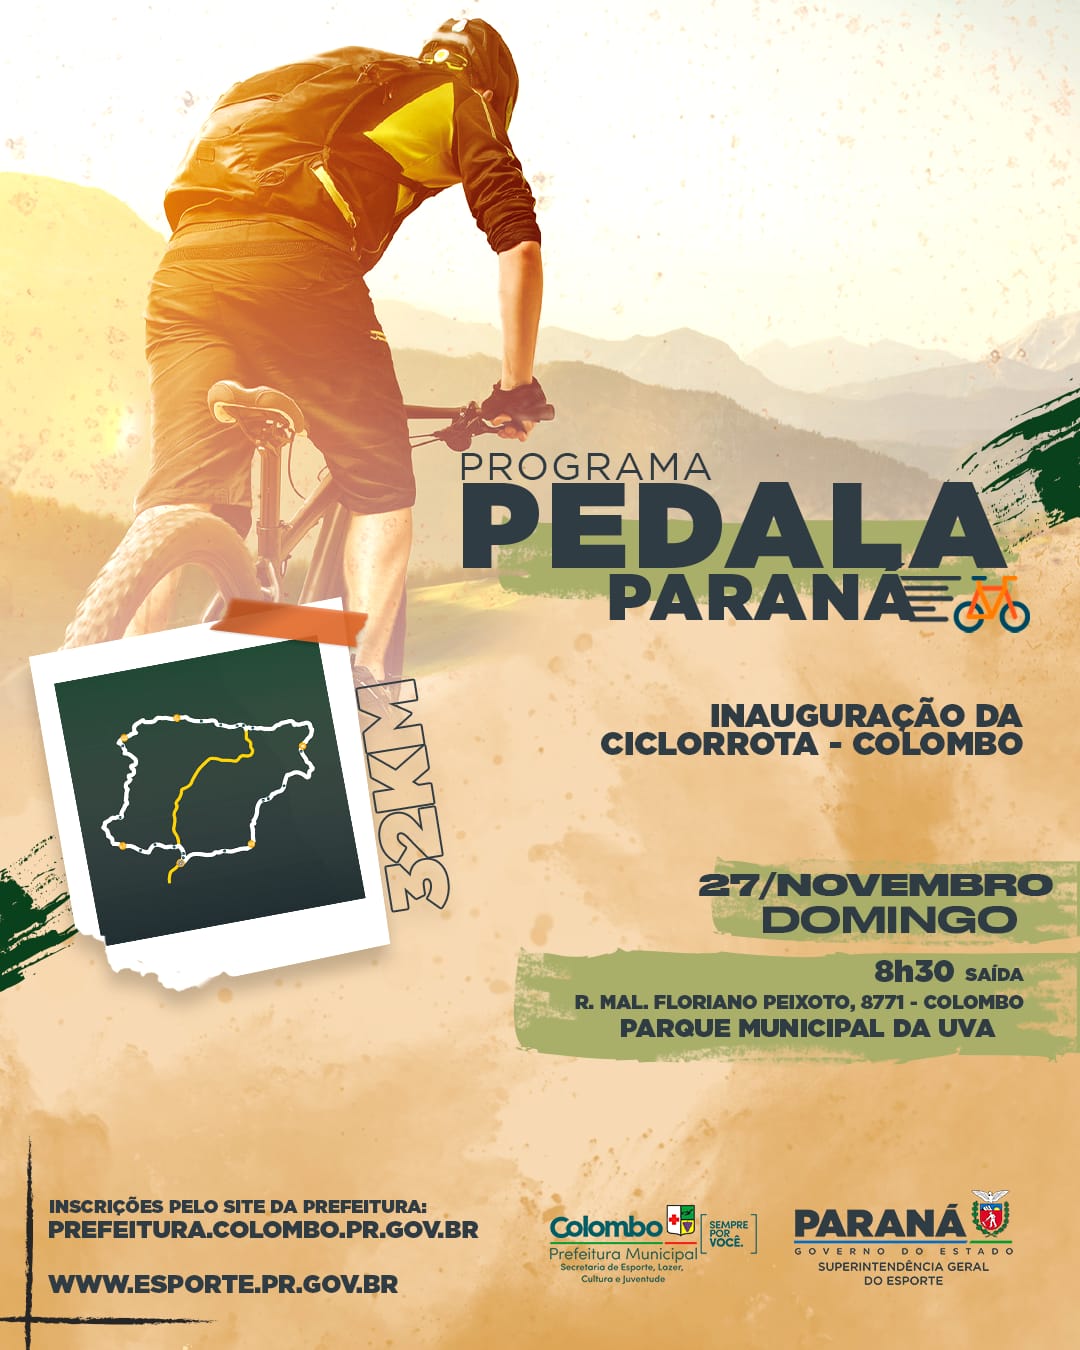 Colombo inaugura no próximo domingo (27) sua ciclorrota dentro do Programa Pedala Mais Paraná